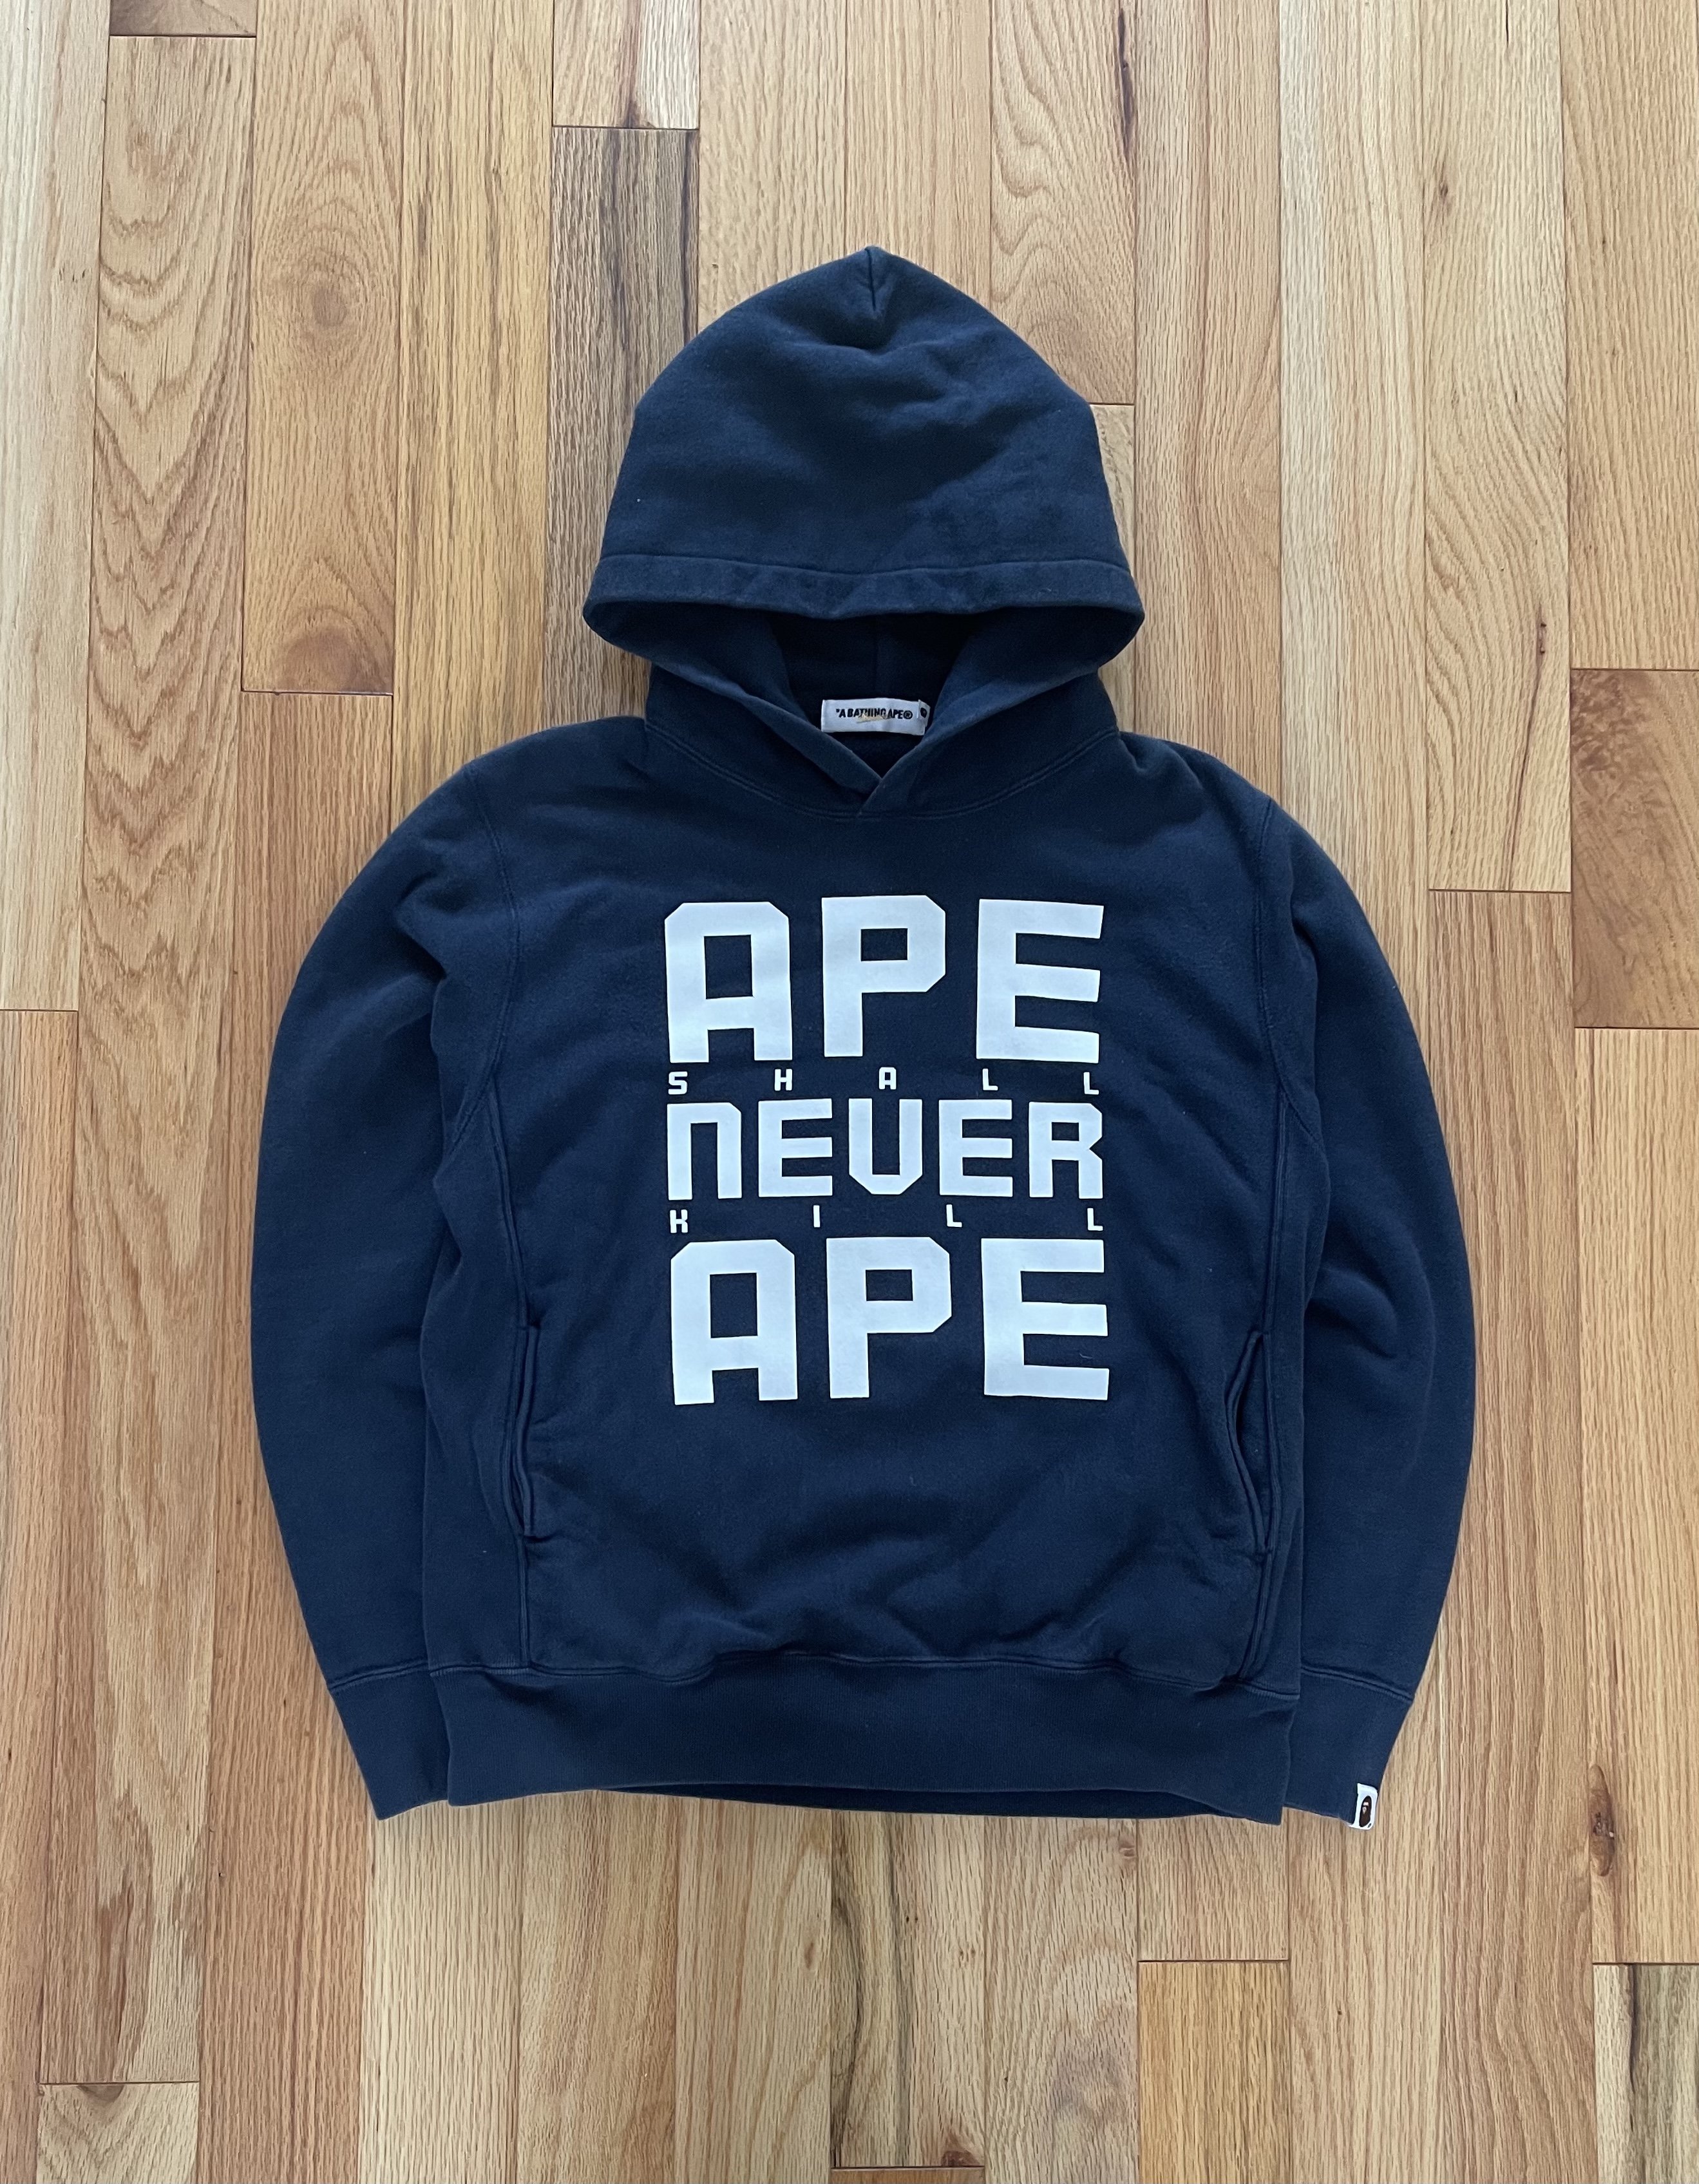 Bape “Ape Shall Never Kill Ape” Hoodie | Reissue: Buy & Sell Designer ...